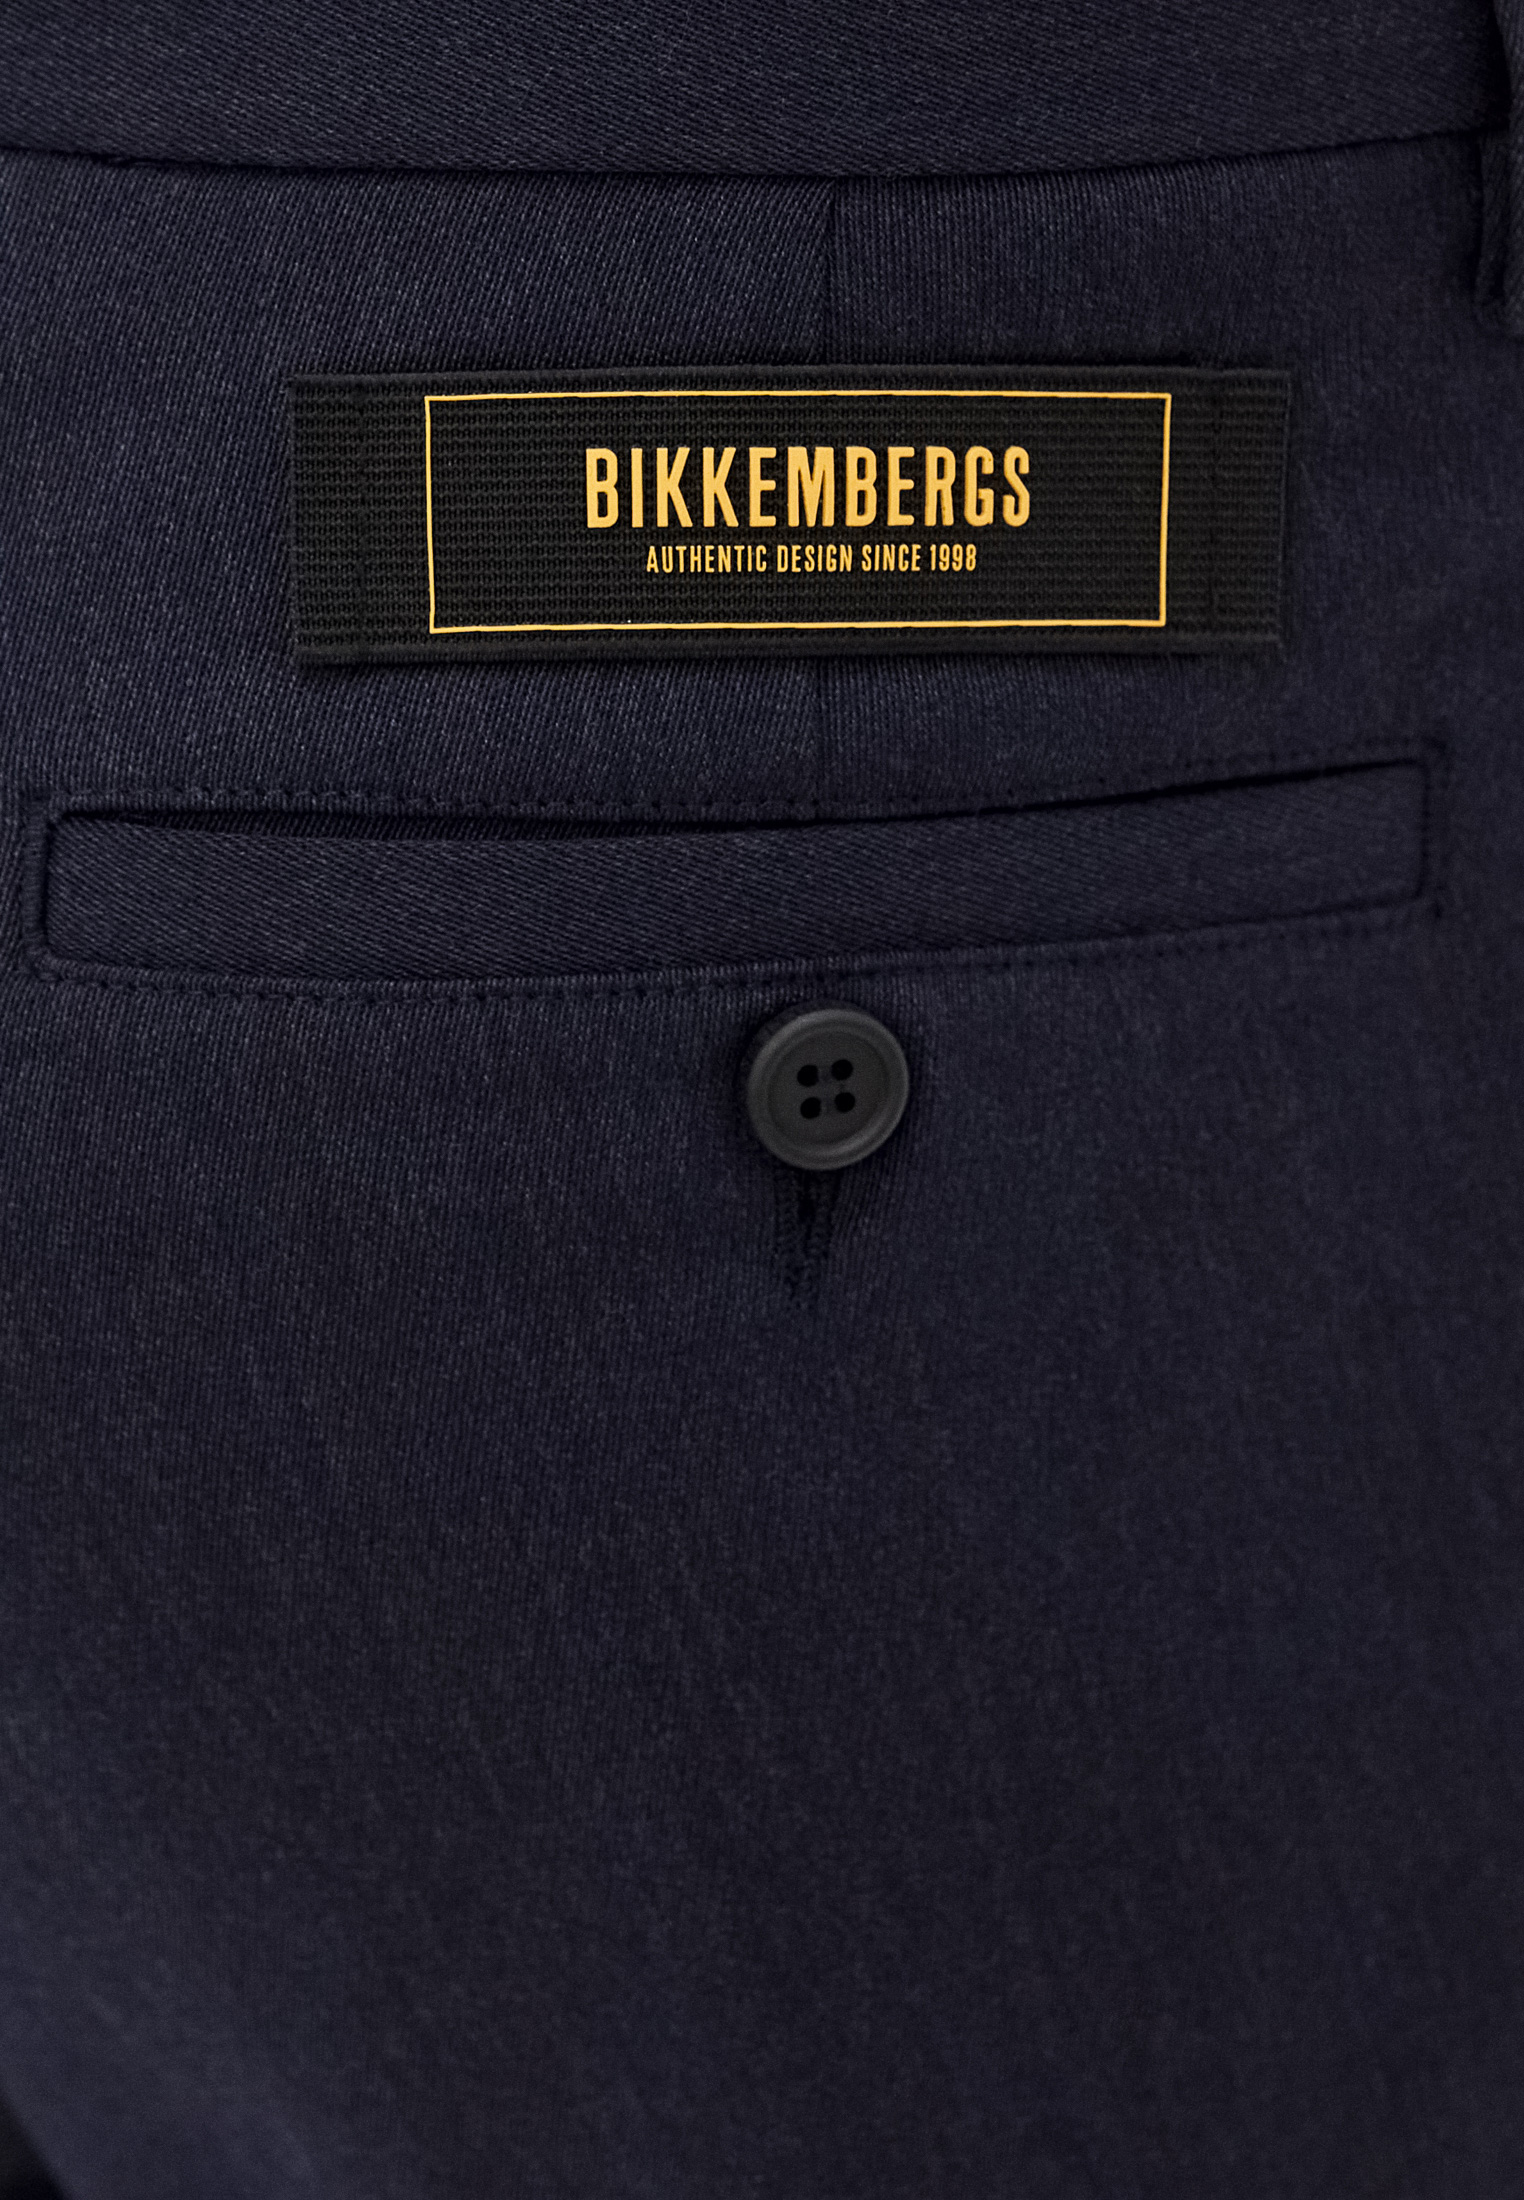 Мужские повседневные брюки Bikkembergs (Биккембергс) C P 001 00 S 3331: изображение 5